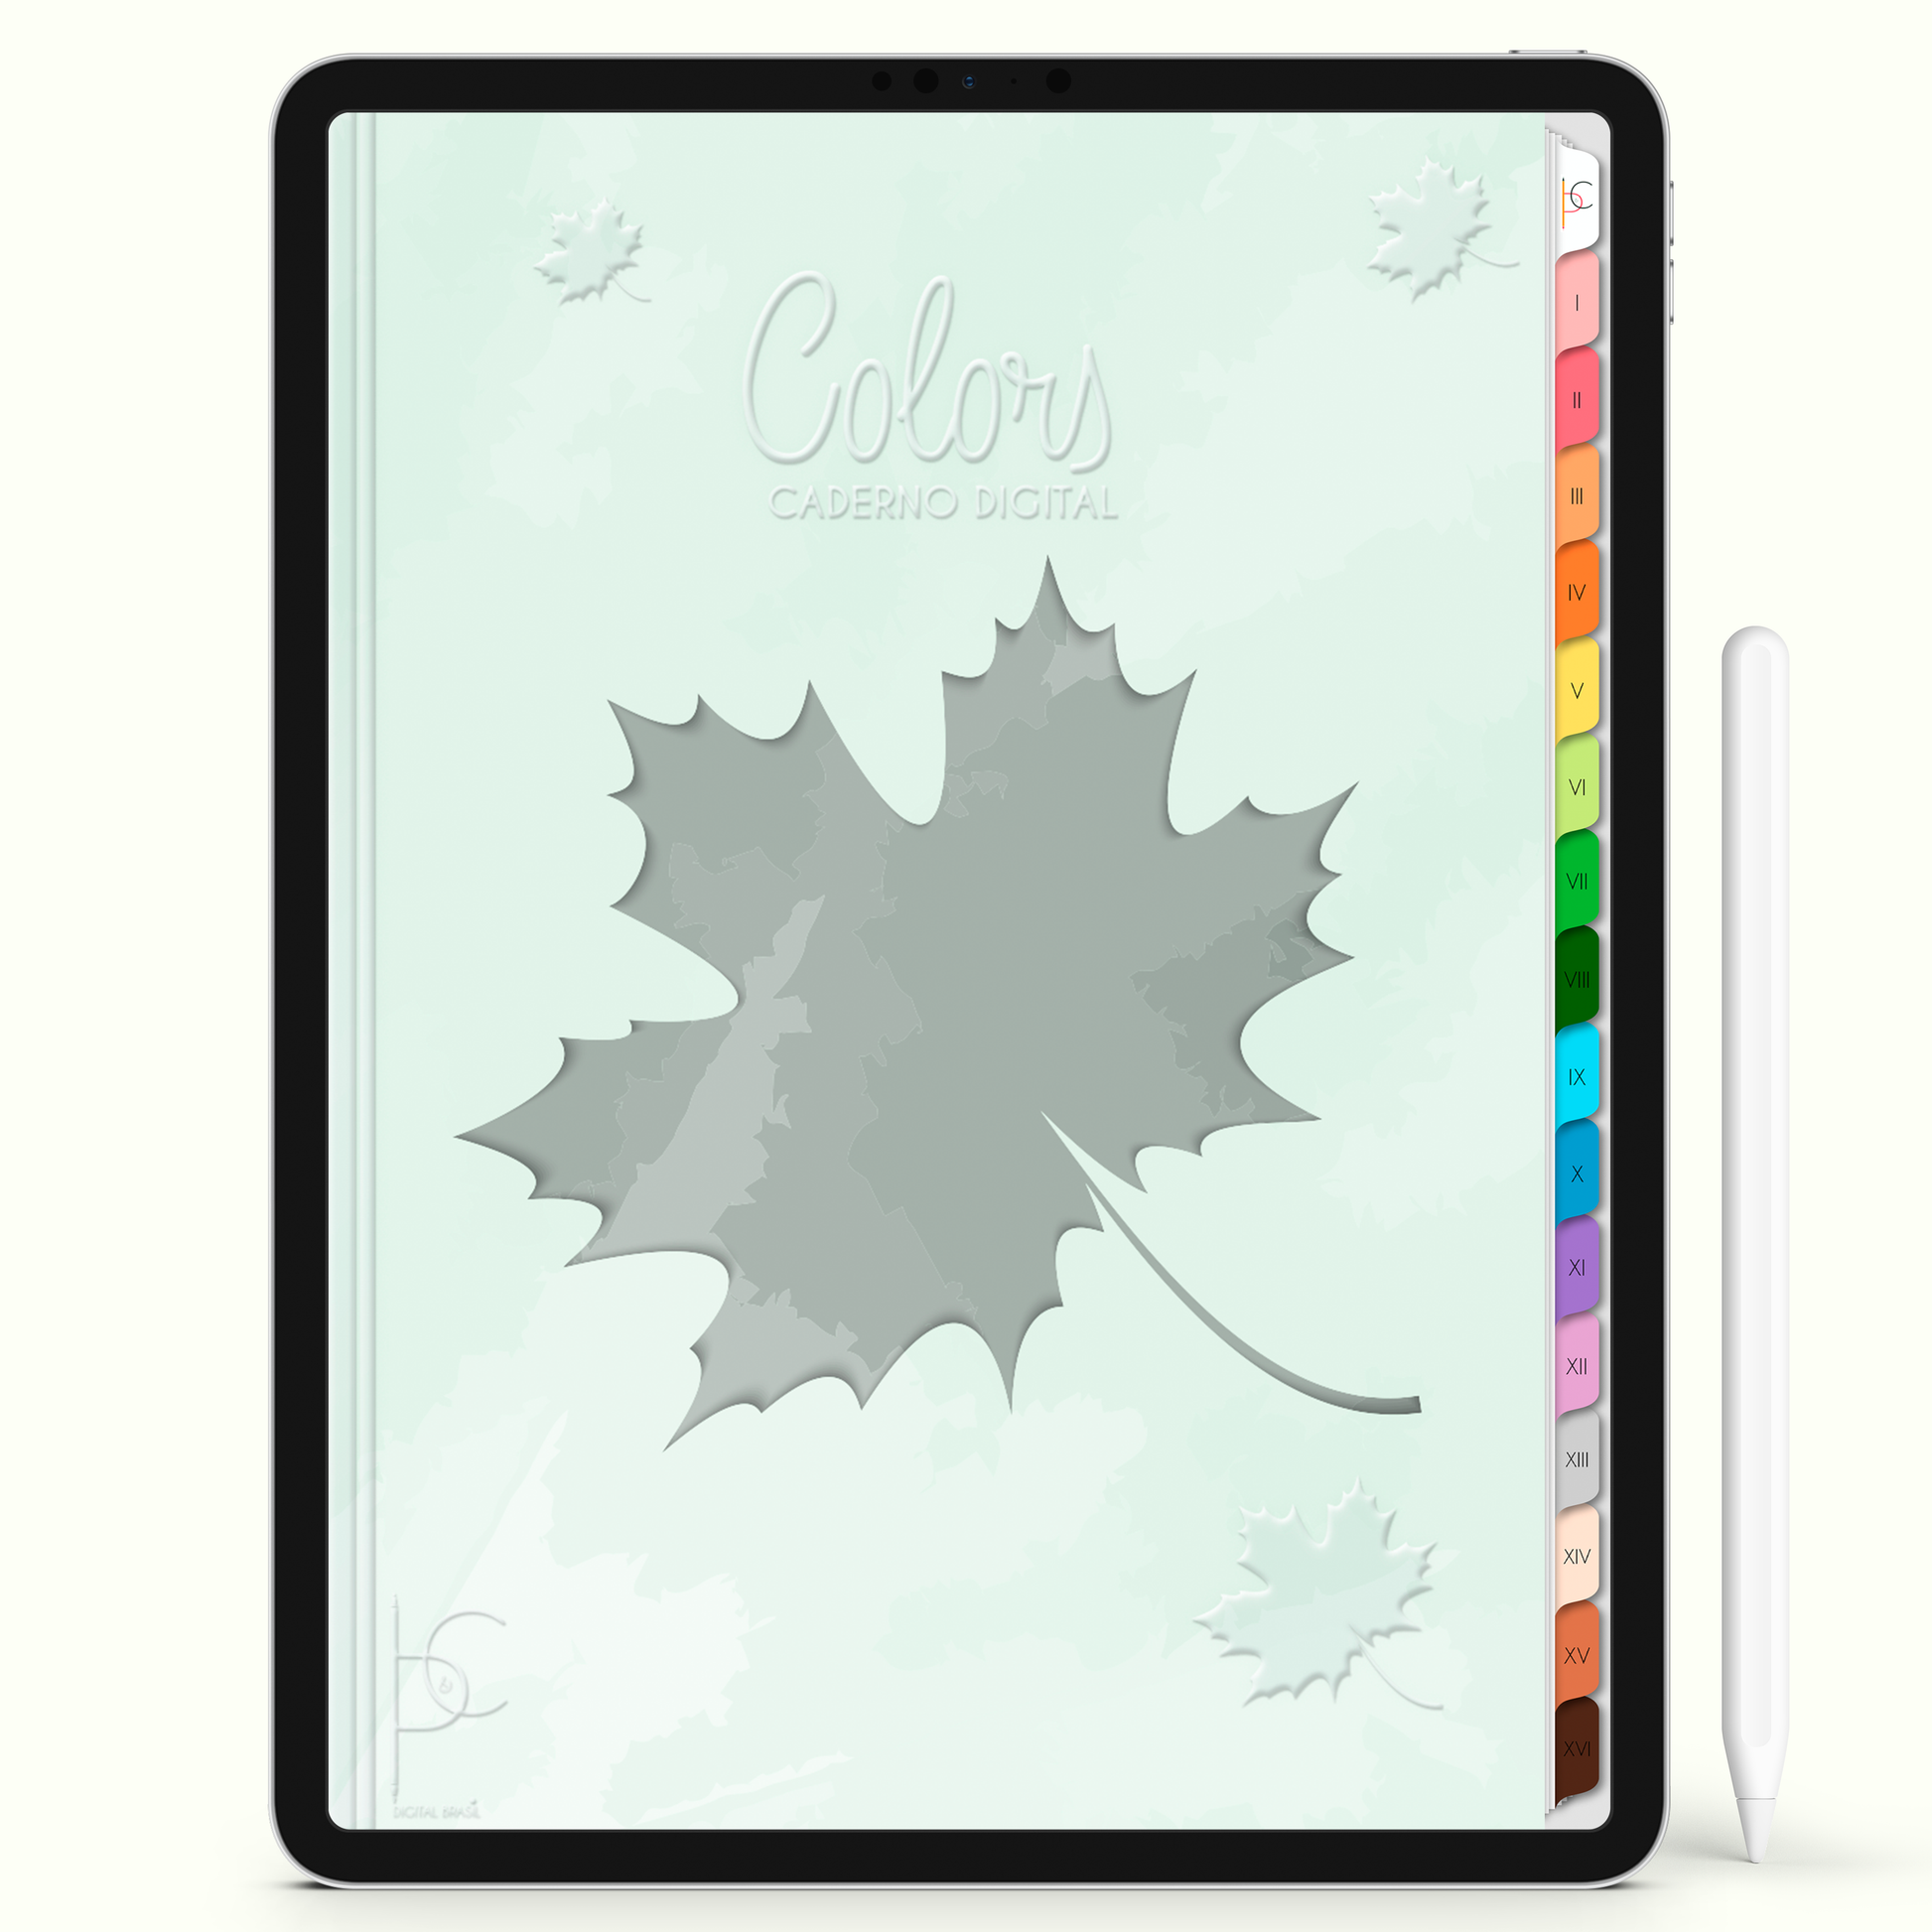 Caderno Digital Colors Estudos e Tarefas 16 Matérias • Para iPad e Tablet Android • Download instantâneo • Sustentável